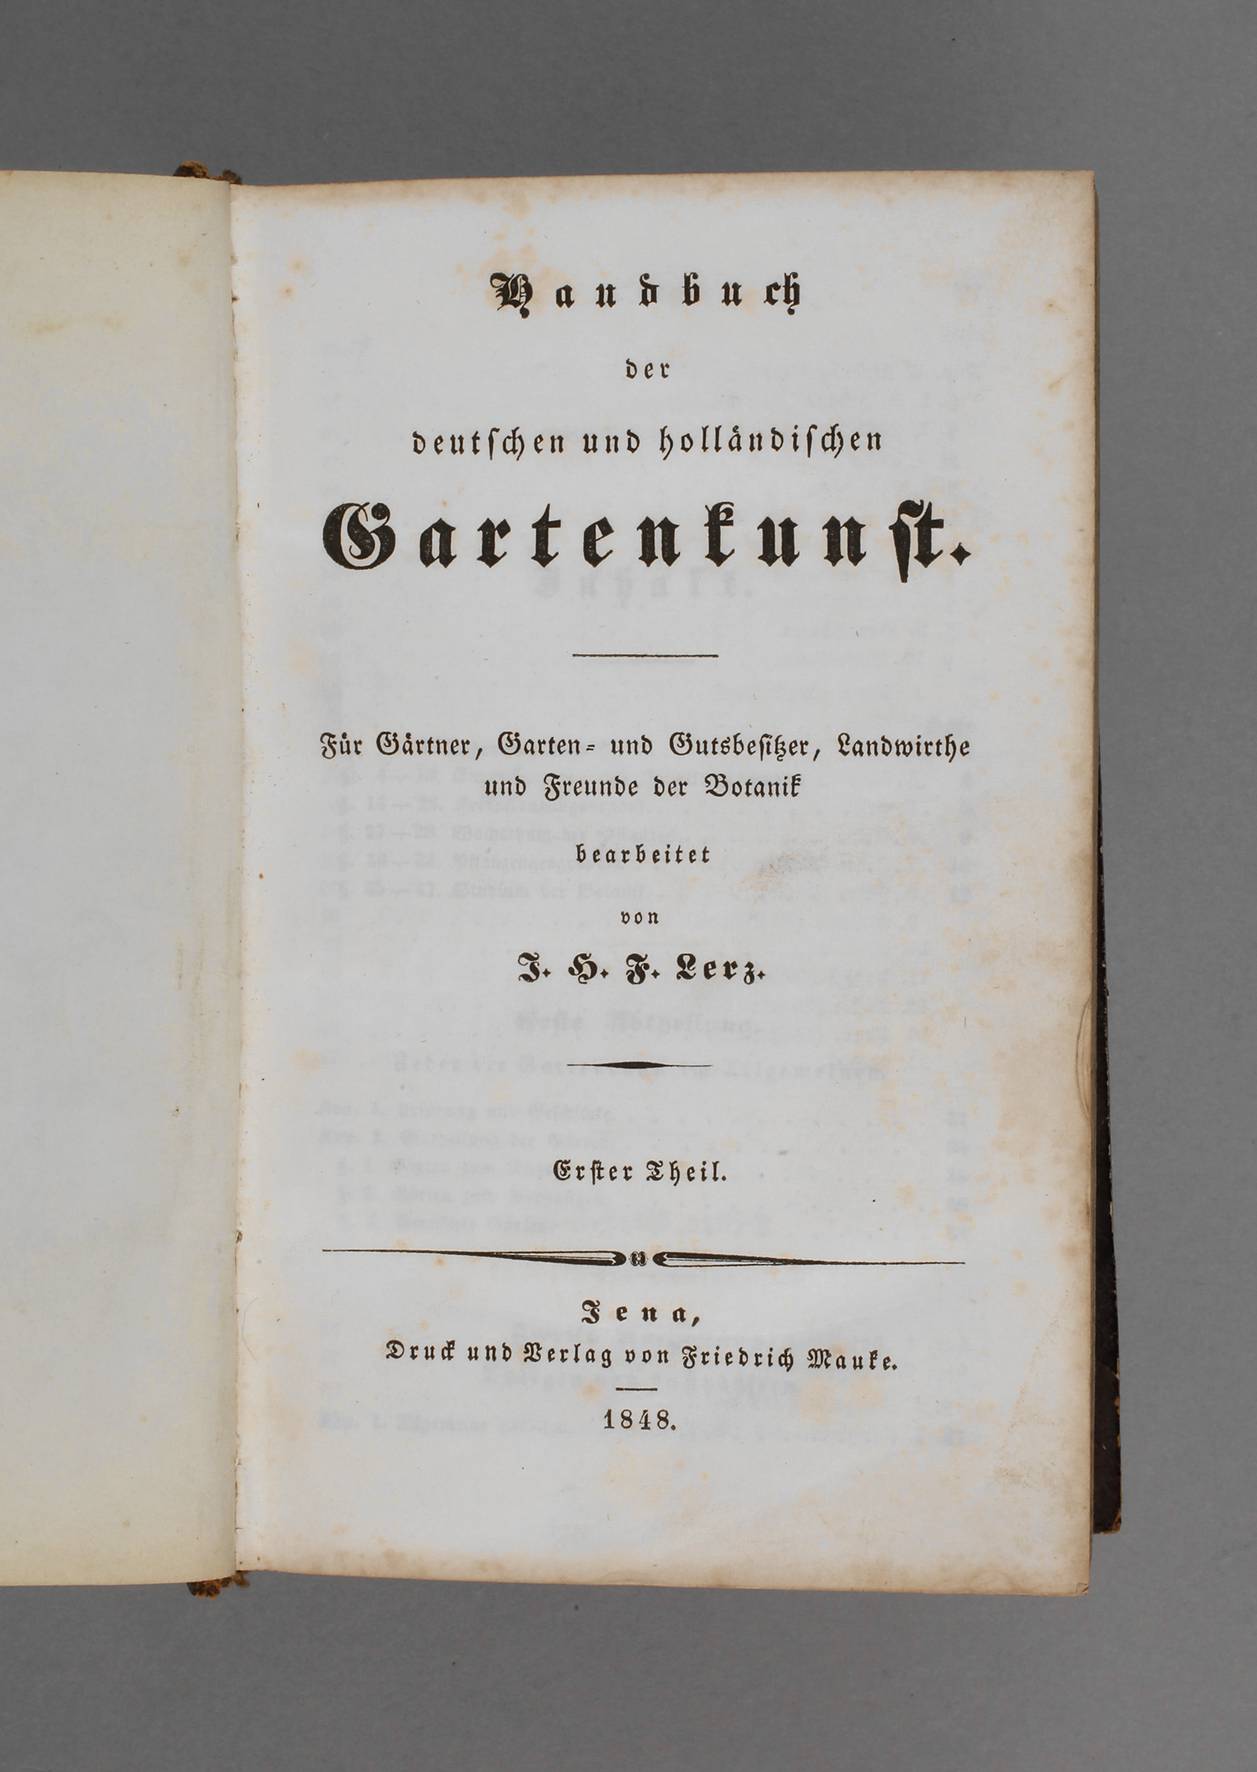 J. H. F. Lerz, Handbuch